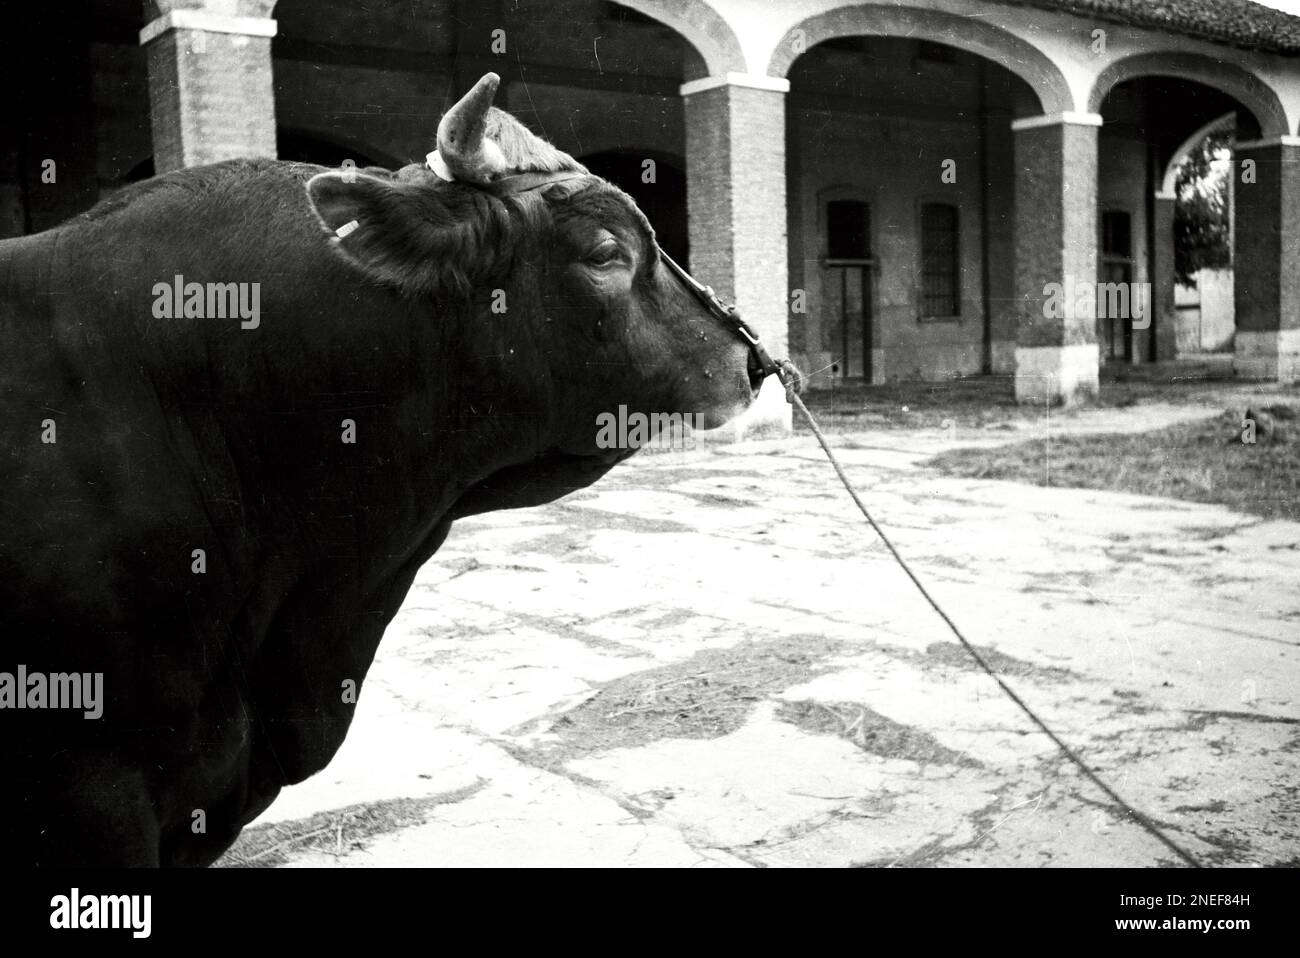 Agricoltura e Allevamento in Lombardia - Toro (anni 30) Stock Photo